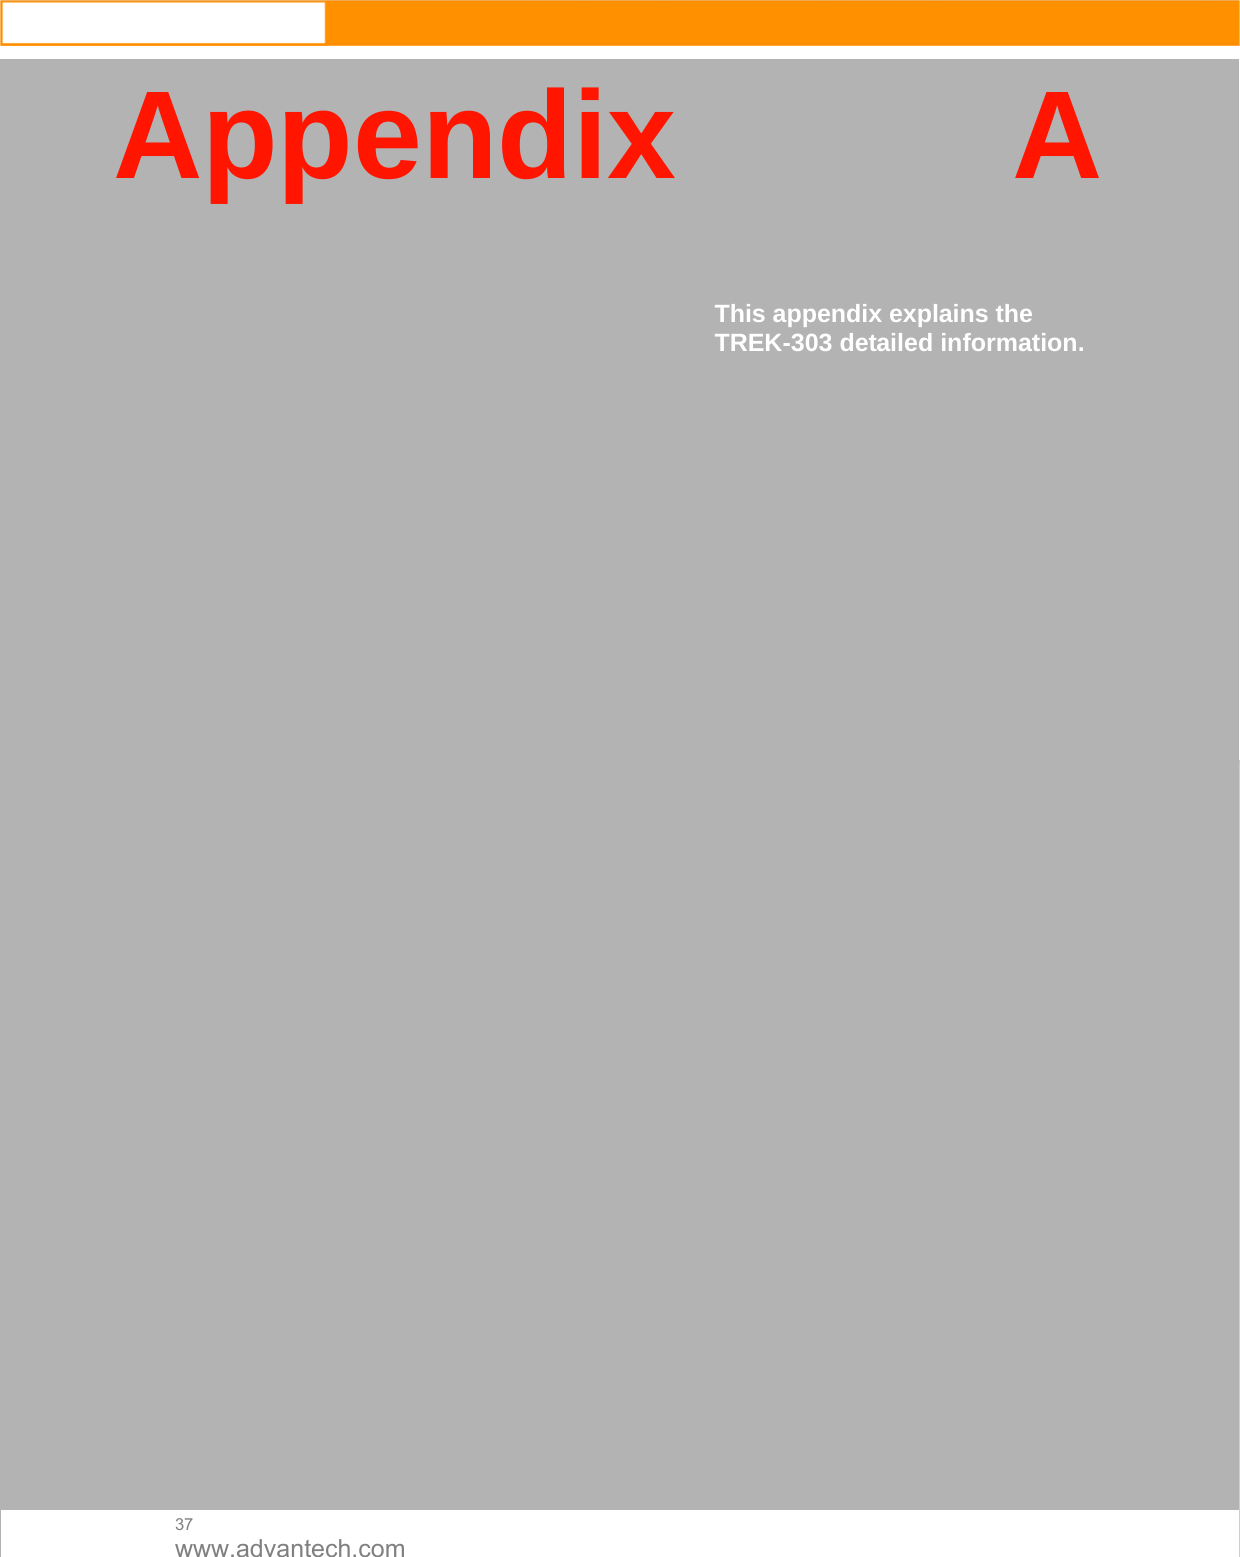  37 www.advantech.com Appendix A     This appendix explains the TREK-303 detailed information.                                               